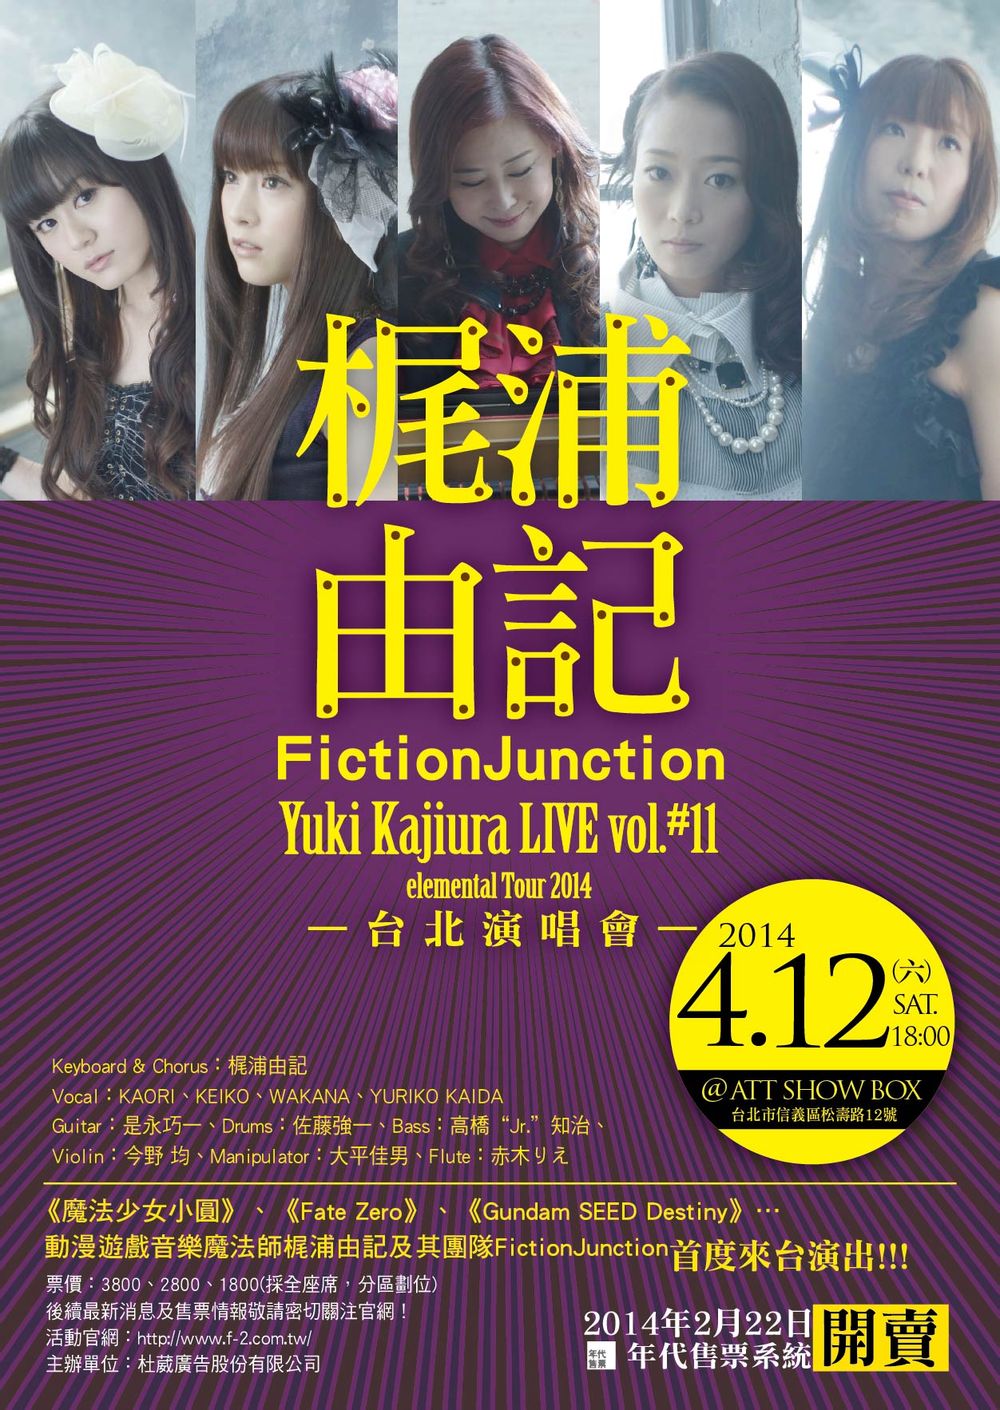 梶浦由記台北演唱會 Yuki Kajiura Live Vol 11 Elemental Tour 14 In Taipei 幻想の境界